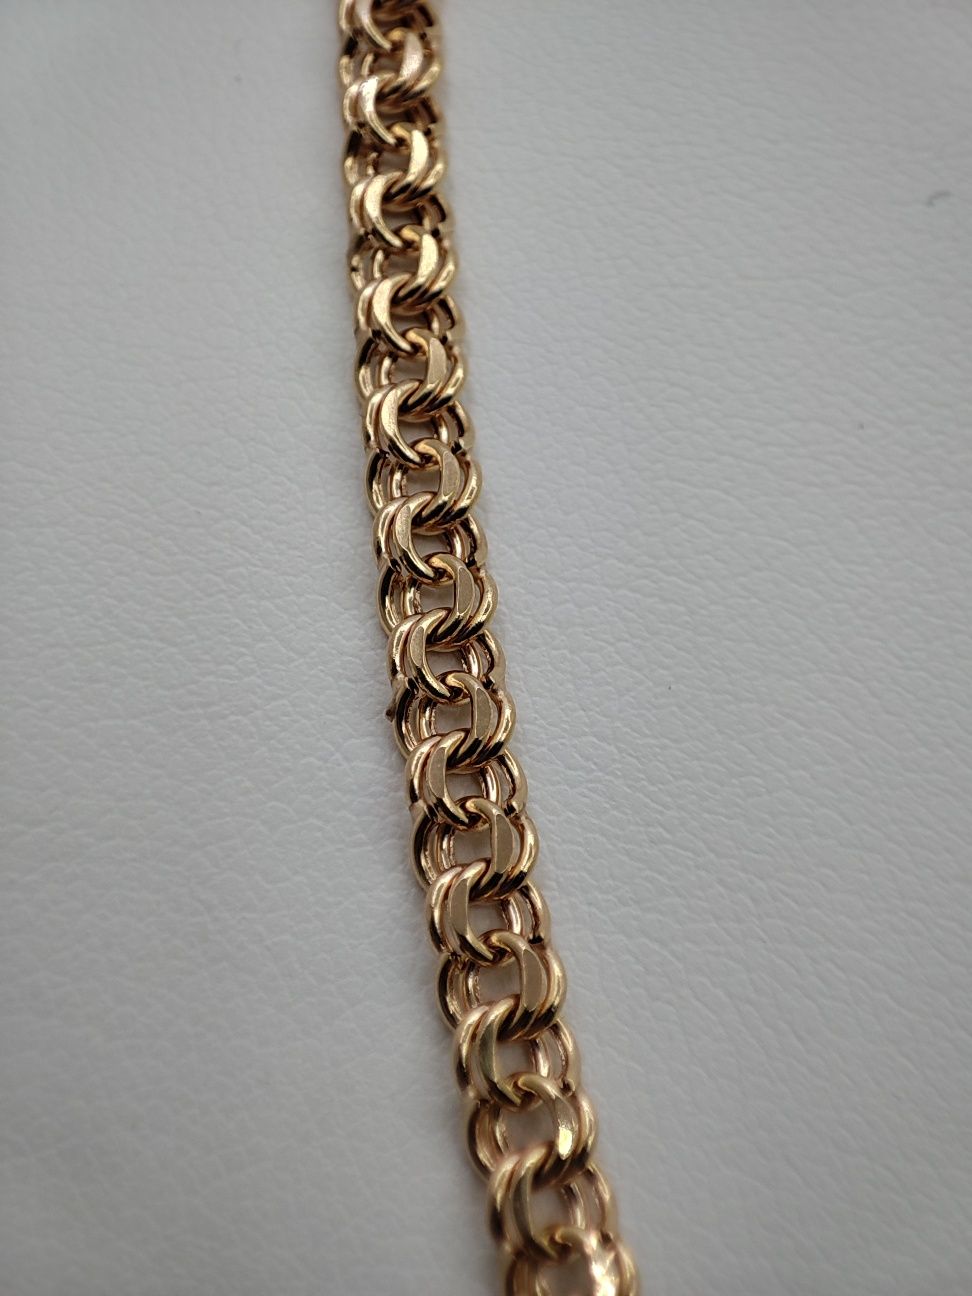 Nowy złoty łańcuszek, splot Garibaldi. Złoto 14k / 585. Długość 55cm